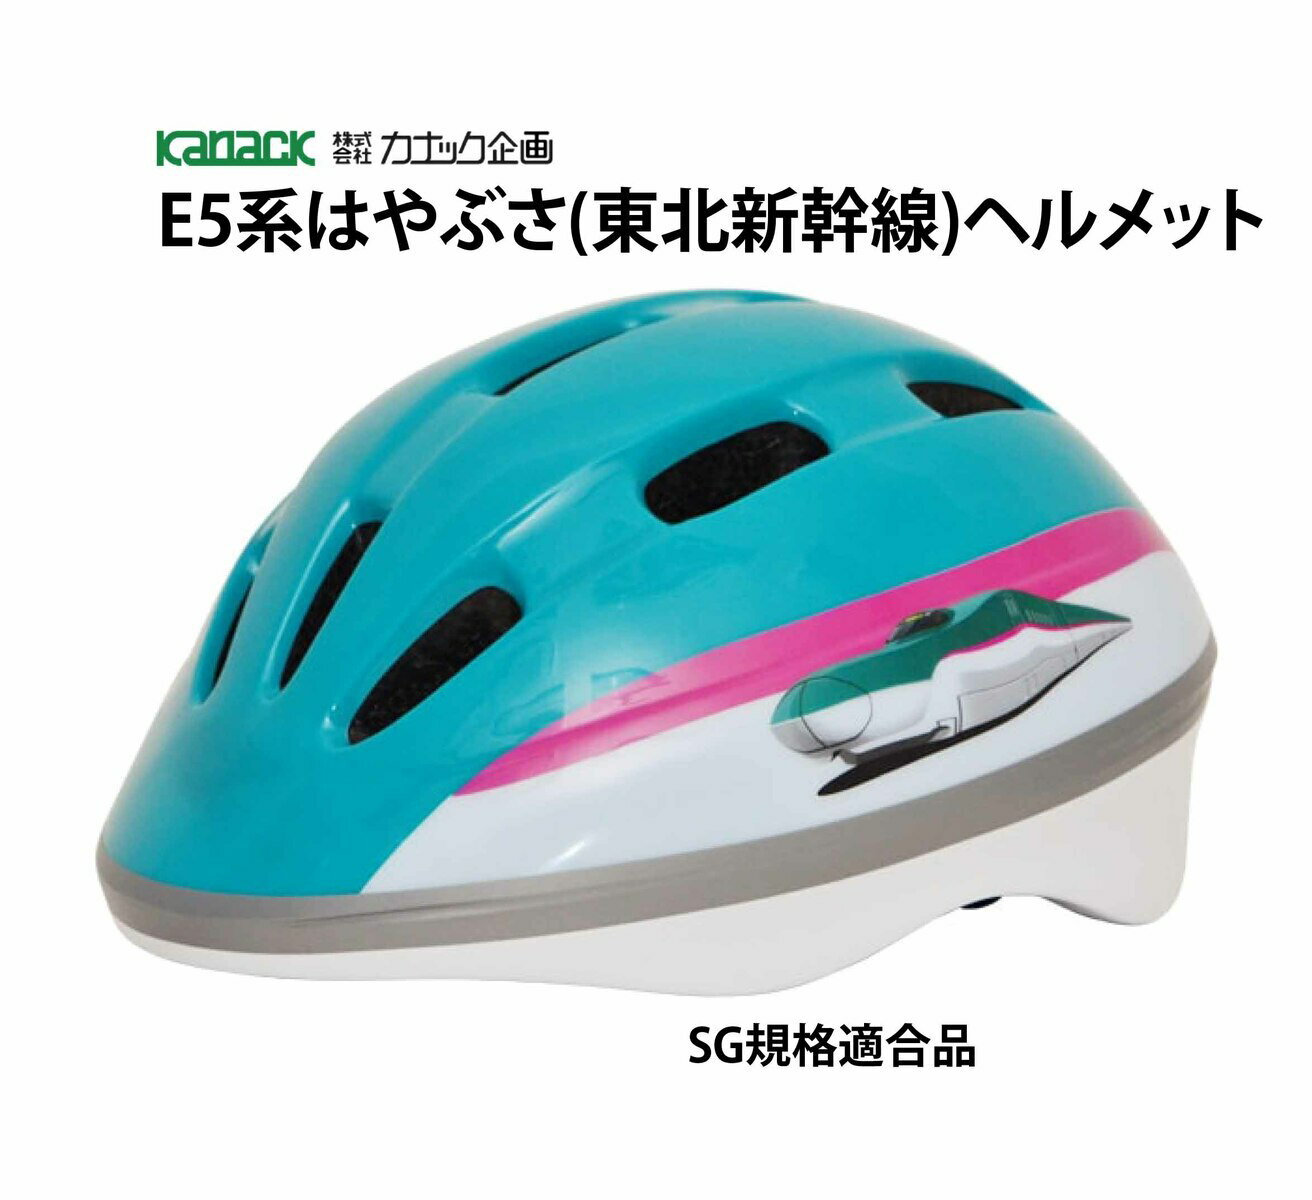 カナック企画 新幹線ヘルメット SG規格合格品 自転車 子供 子供用ヘルメット E5系はやぶさ 東北新幹線